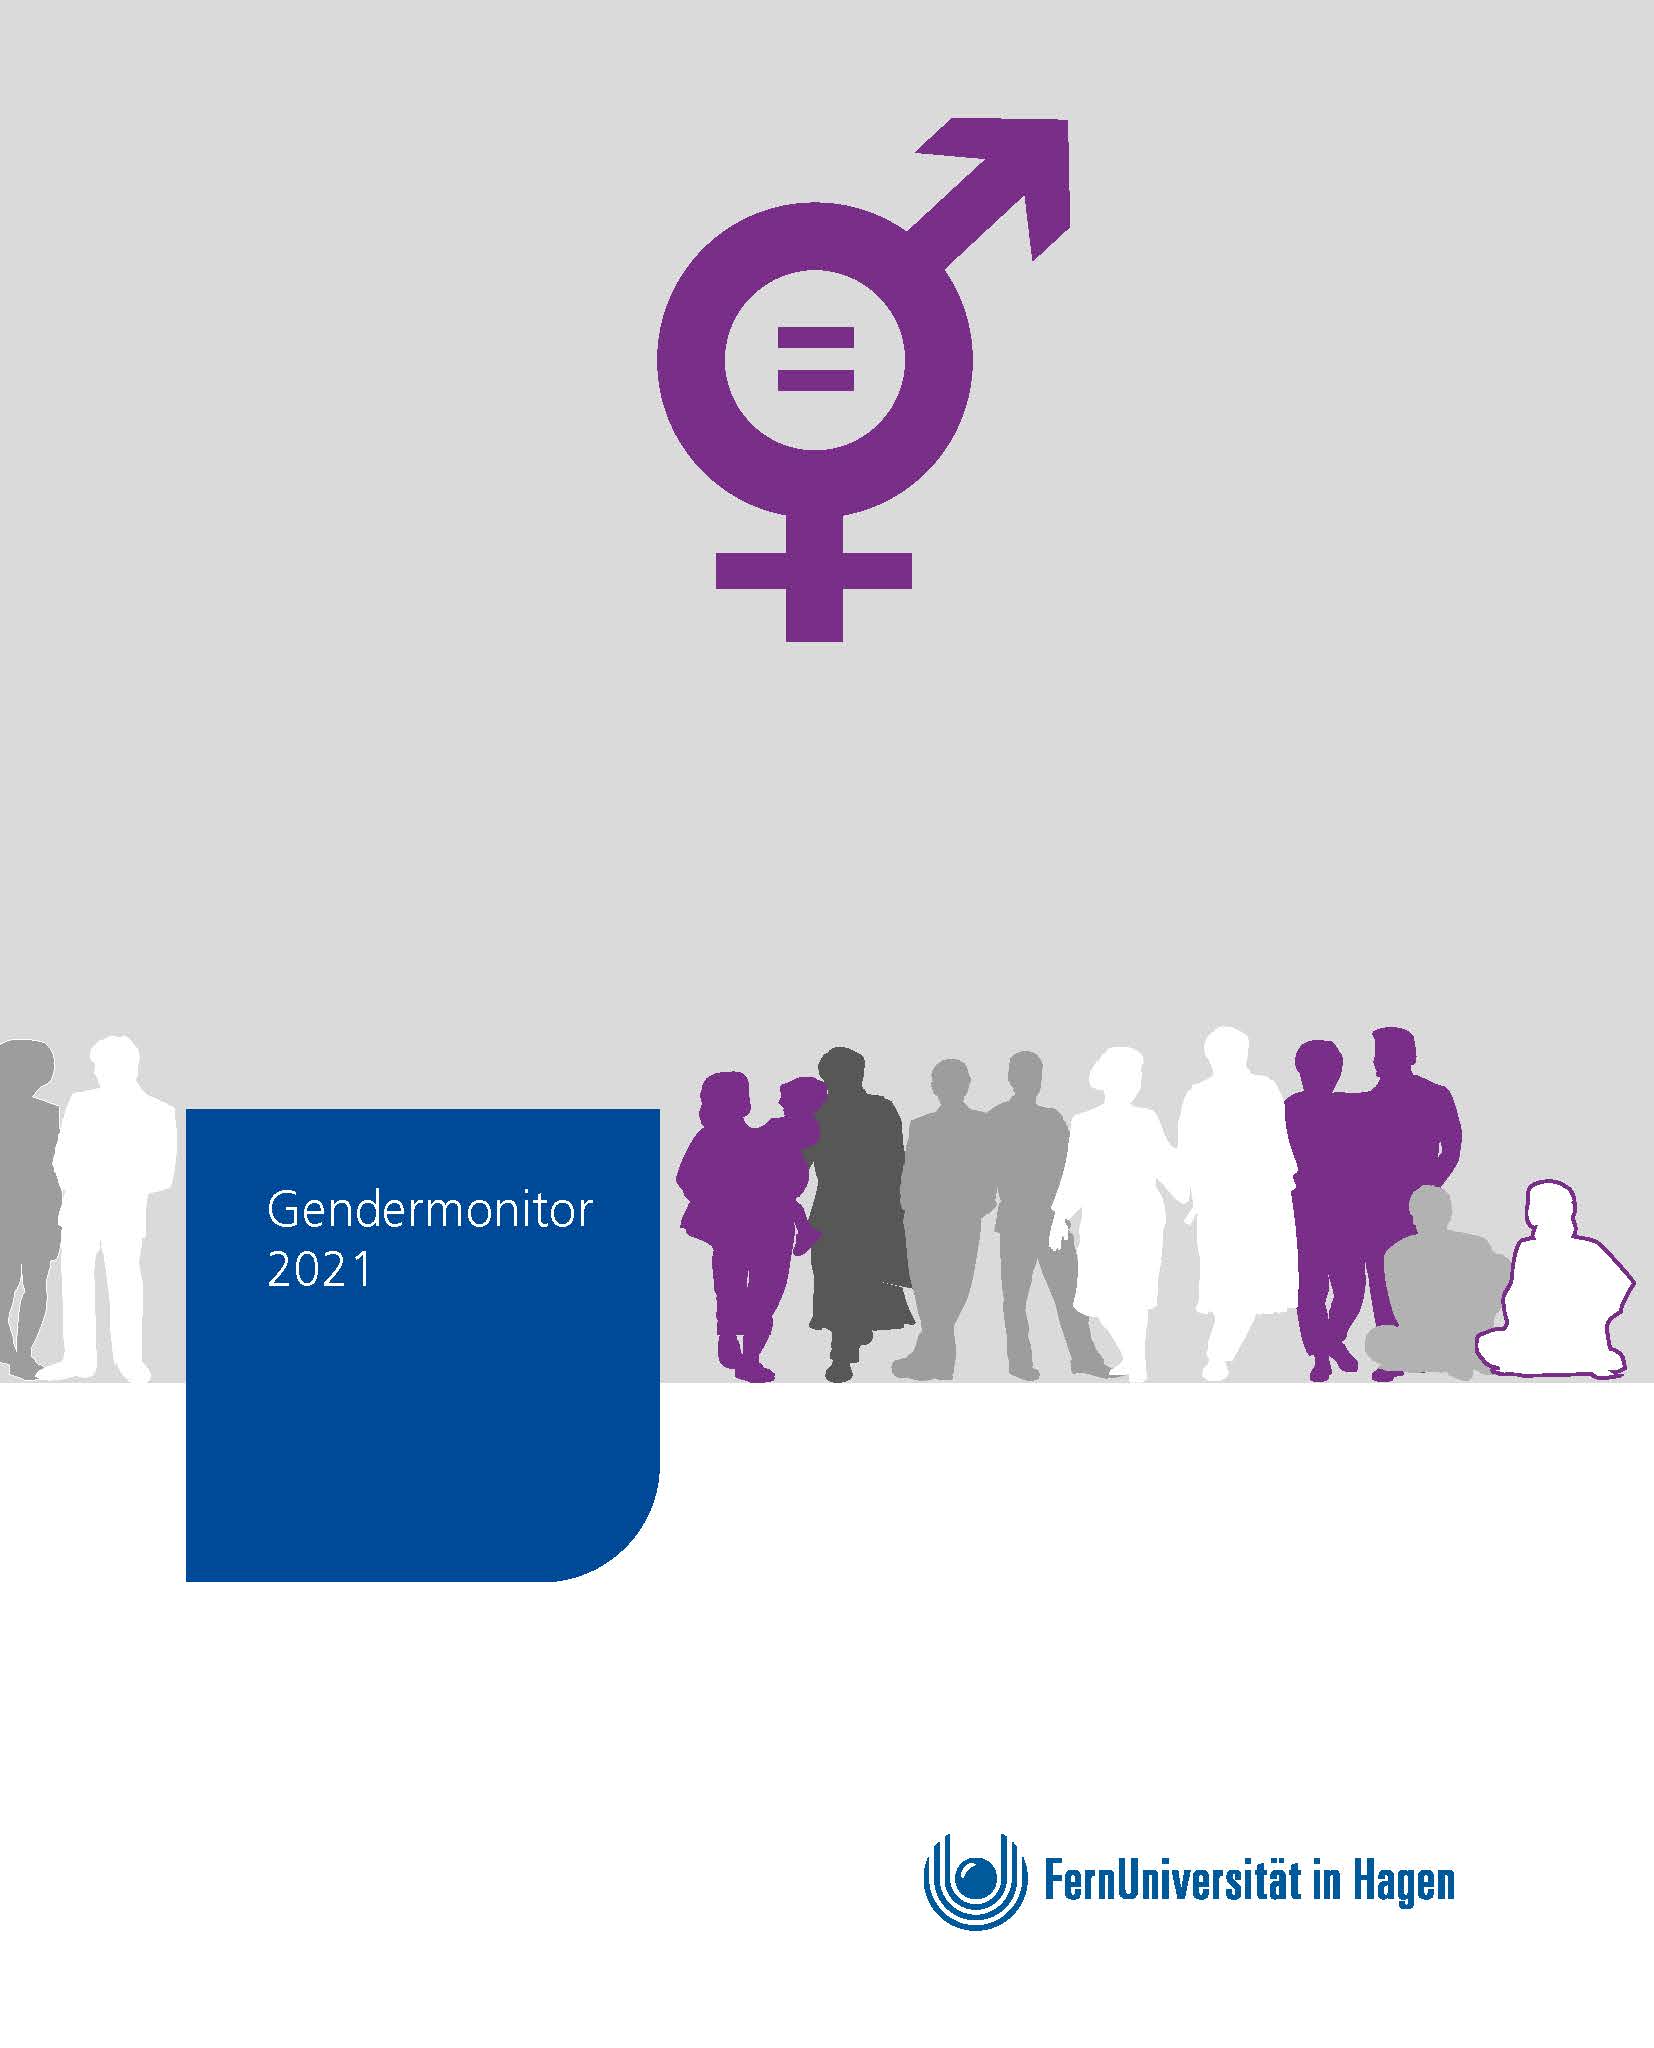 Abbildung: Gendermonitor 2021 der FernUniversität